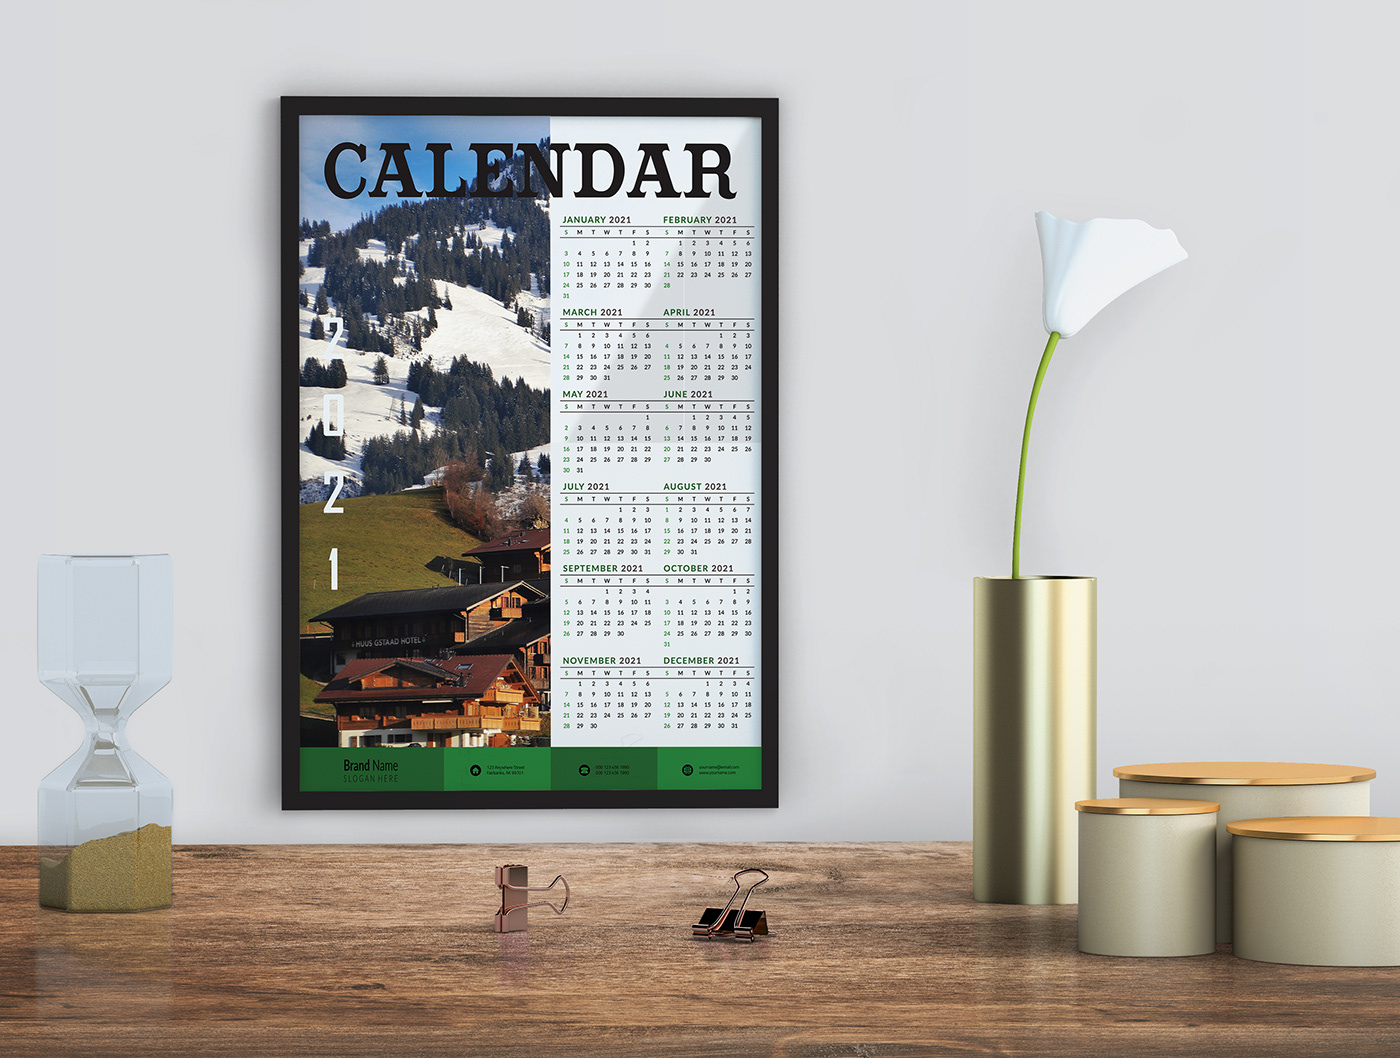 calendar calendar design calendario calendars desk calendar notebook planner planner design planners wall